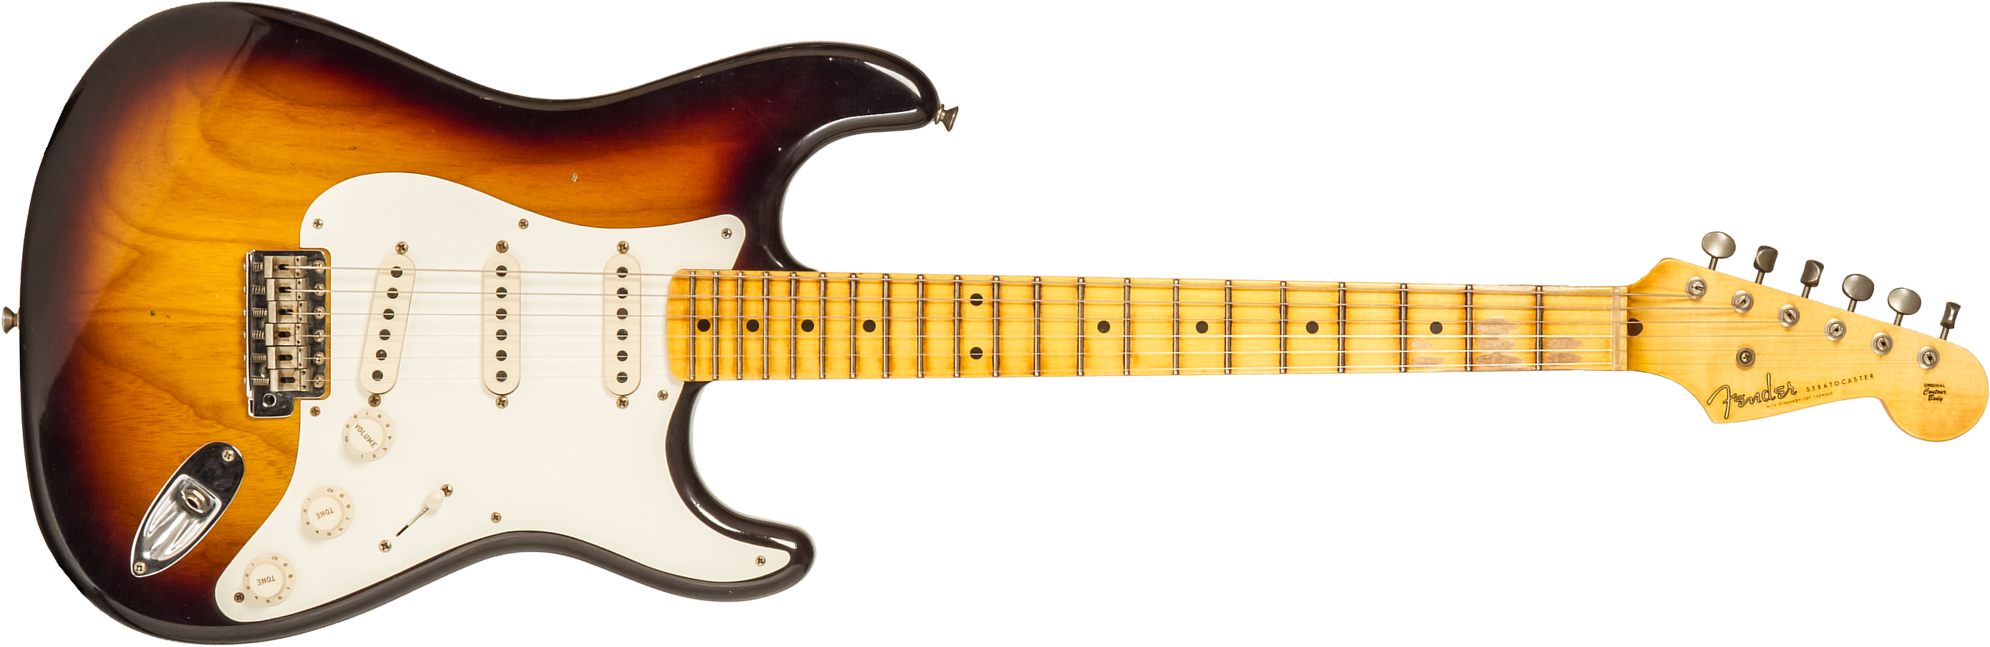 Fender Custom Shop Strat 1955 3s Trem Mn #r130058 - Journeyman Relic 2-color Sunburst - Guitare Électrique Forme Str - Main picture